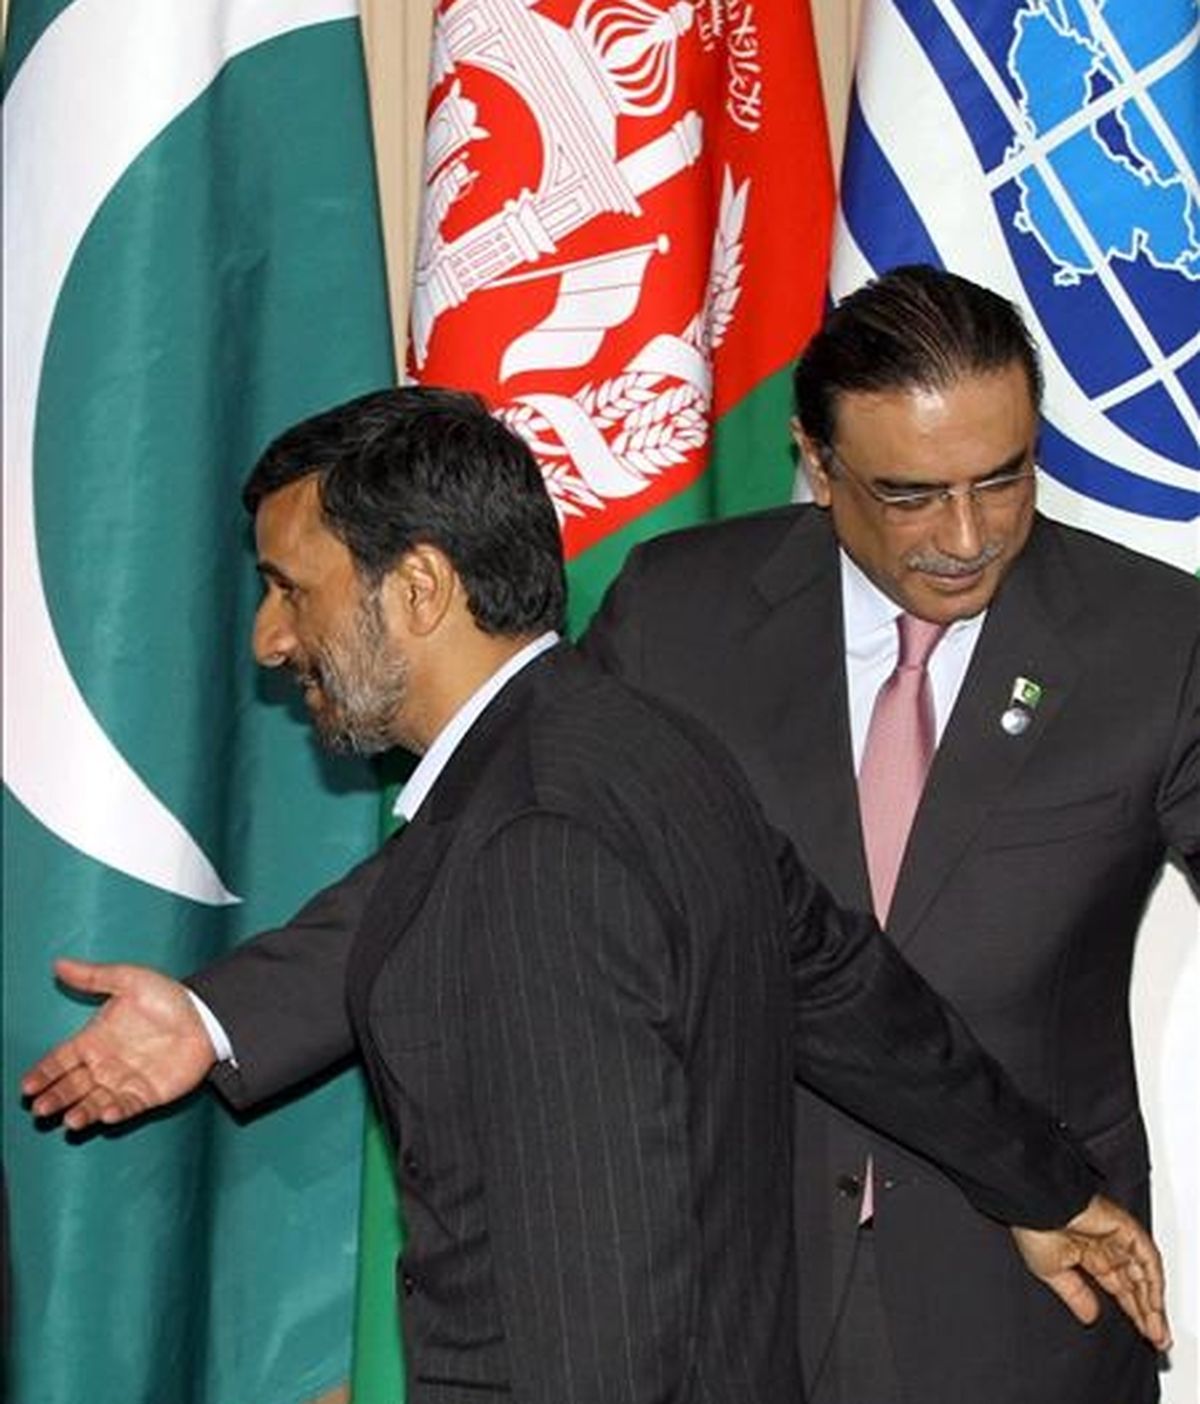 El presidente de Irán, Mahmud Ahmadineyad (i), junto a su homólogo de Pakistán, Asif Ali Zardari, antes de la foto de familia de la segunda jornada de la reunión de la Organización de Cooperación de Shangai (SCO) que se celebró en Yekaterimburgo, Rusia, hoy martes 16 de junio. EFE